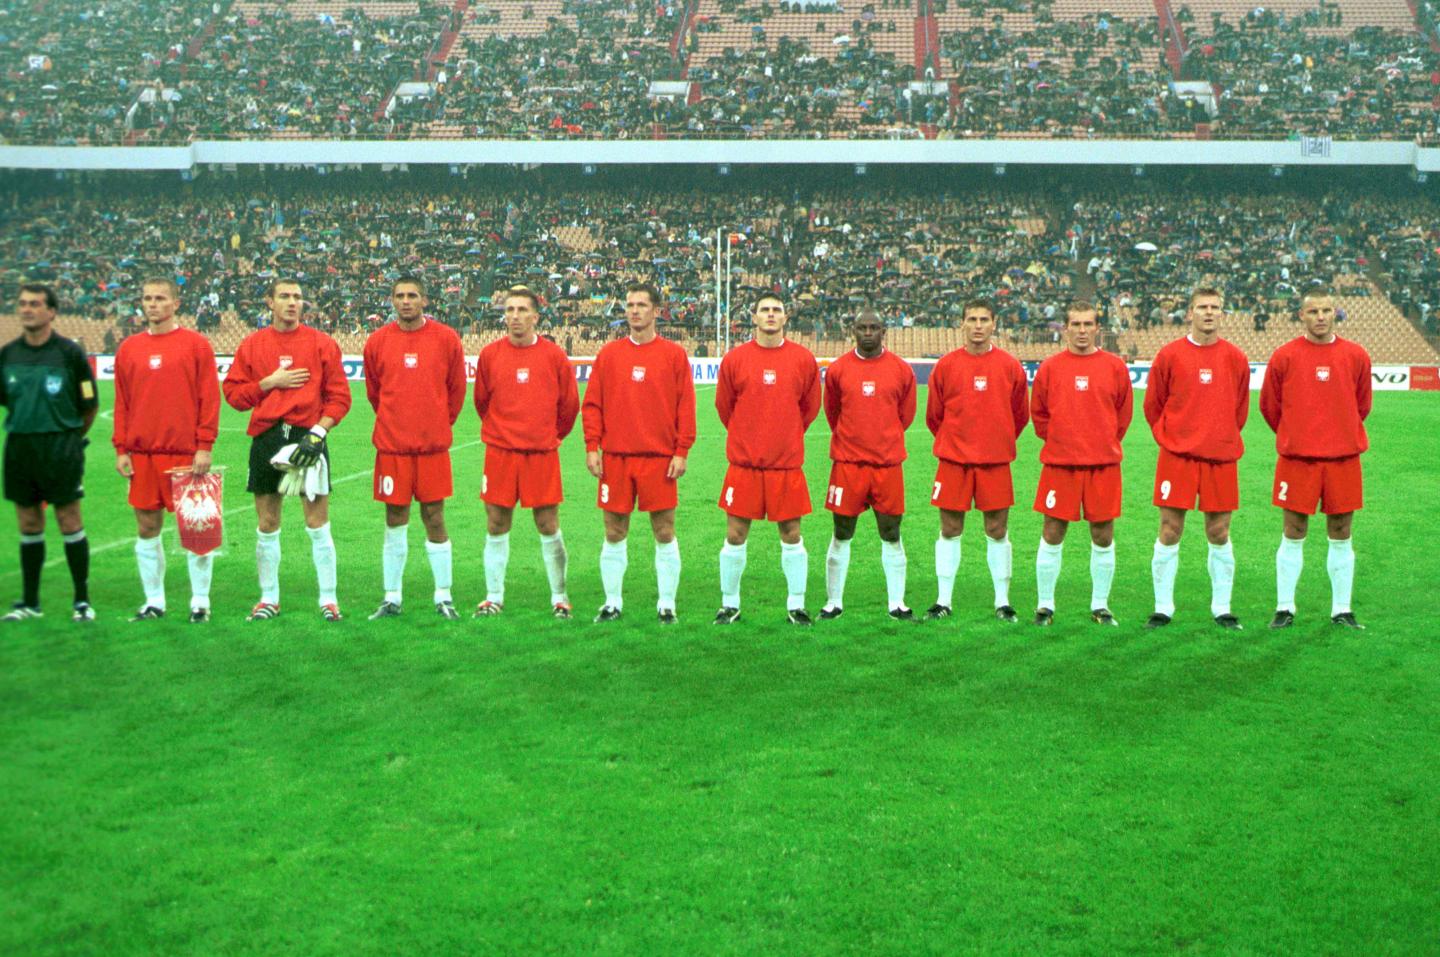 Ukraina - Polska 1:3 (02.09.2000).